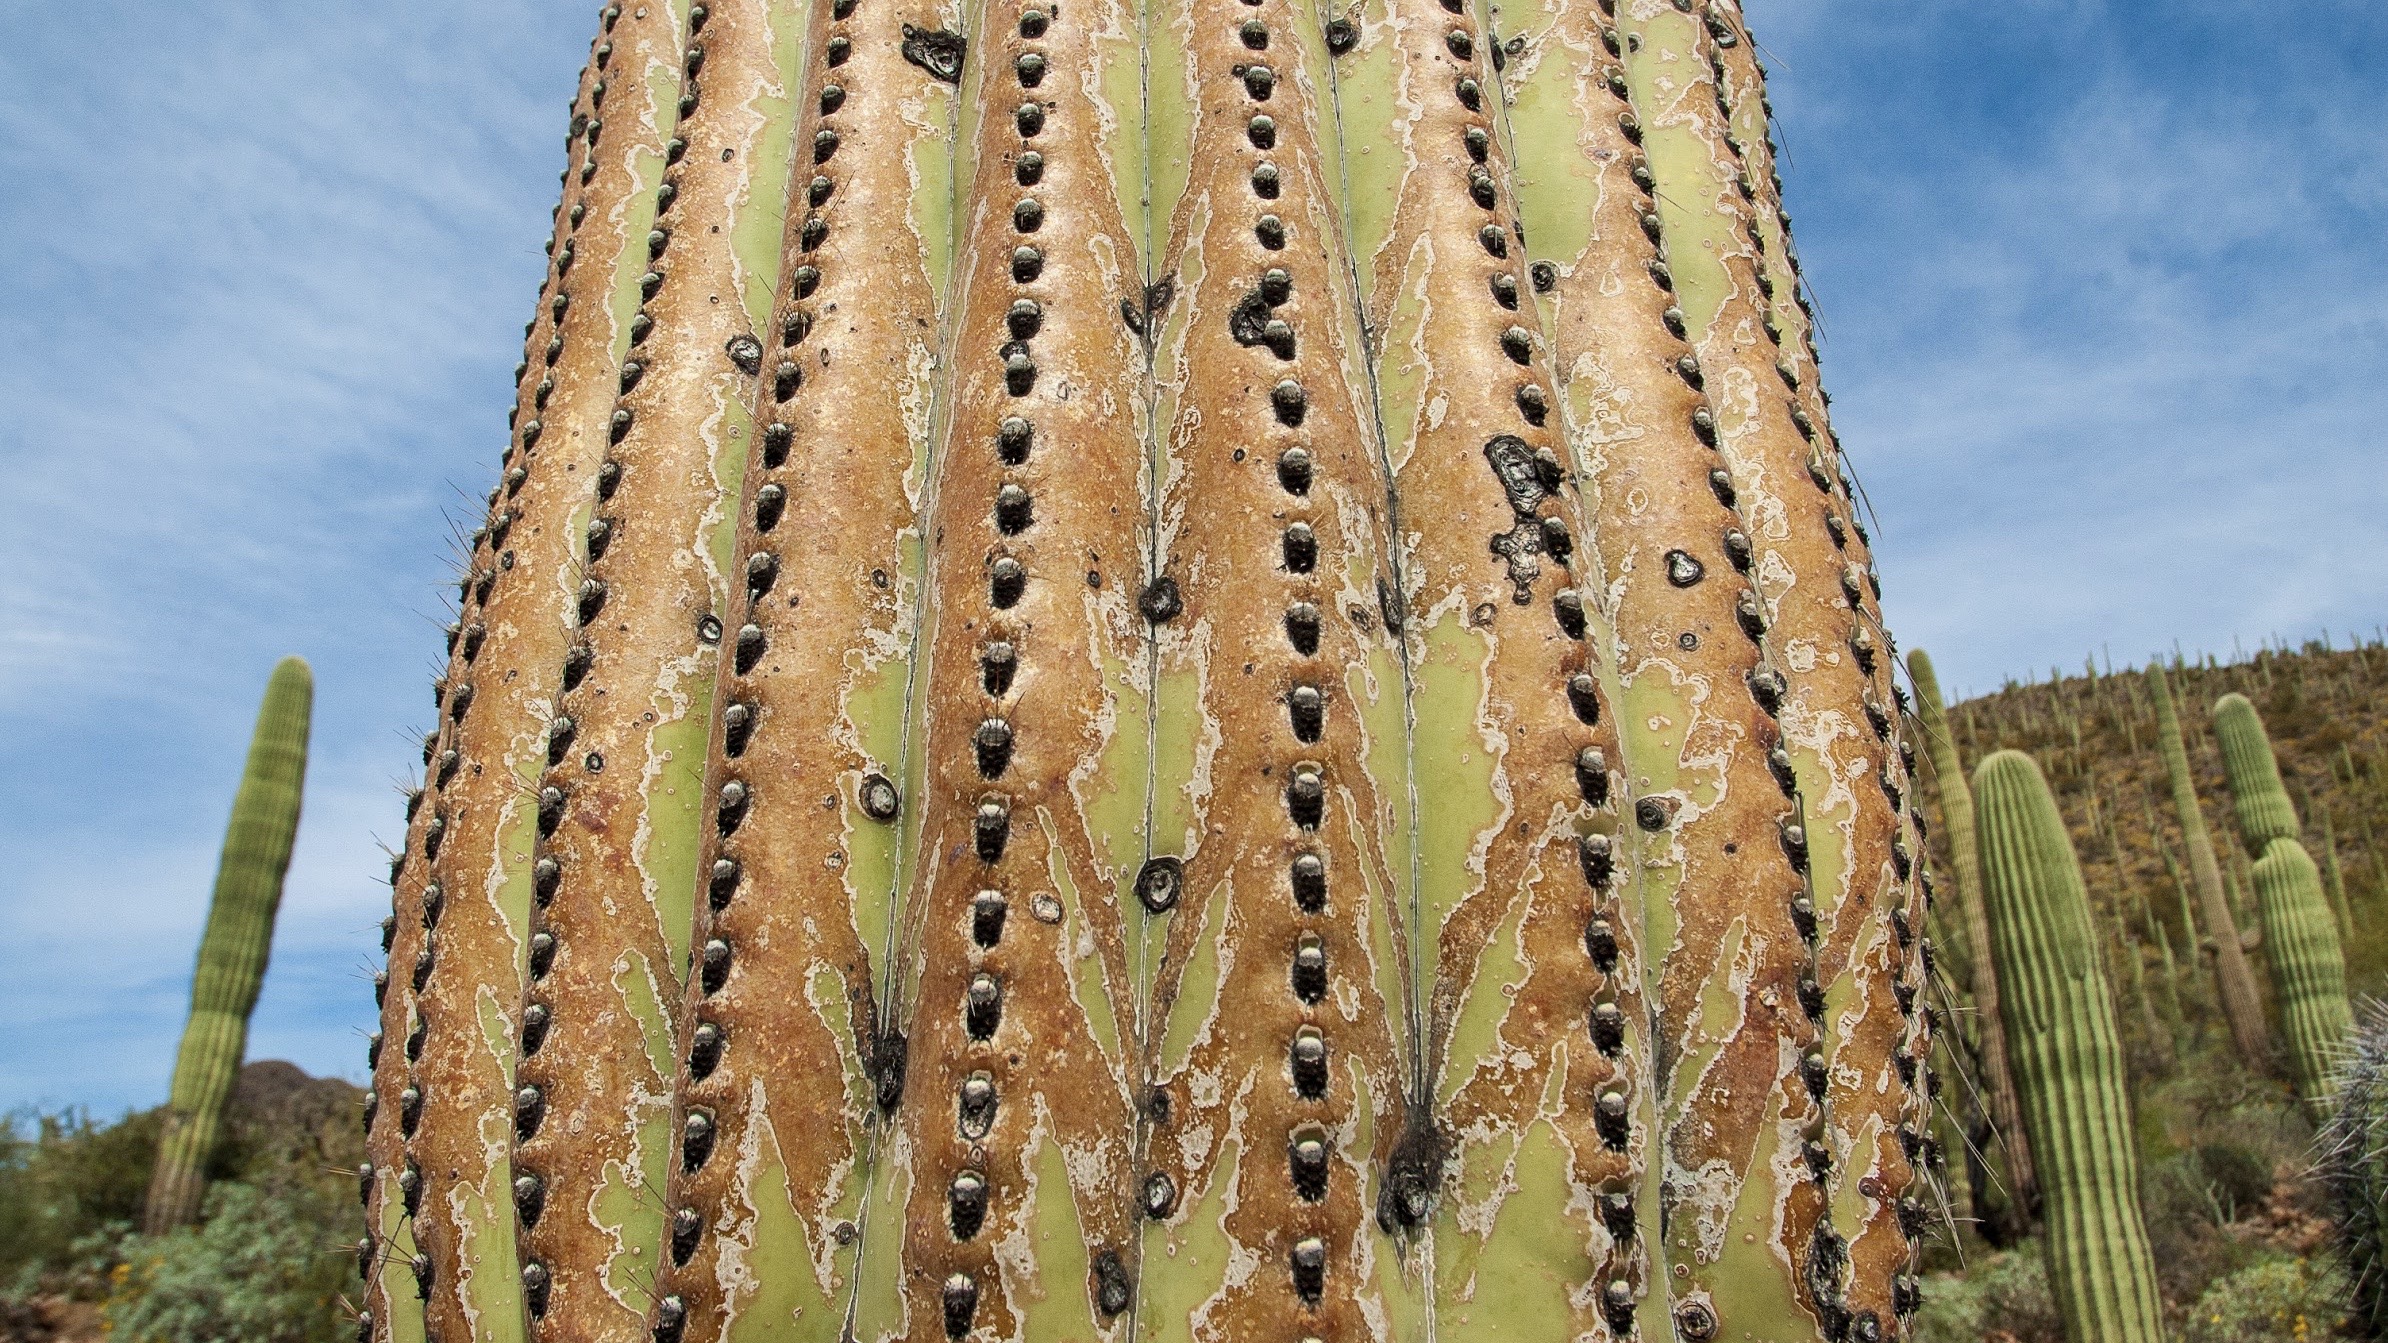 Close-up view of a Saguaro cactus